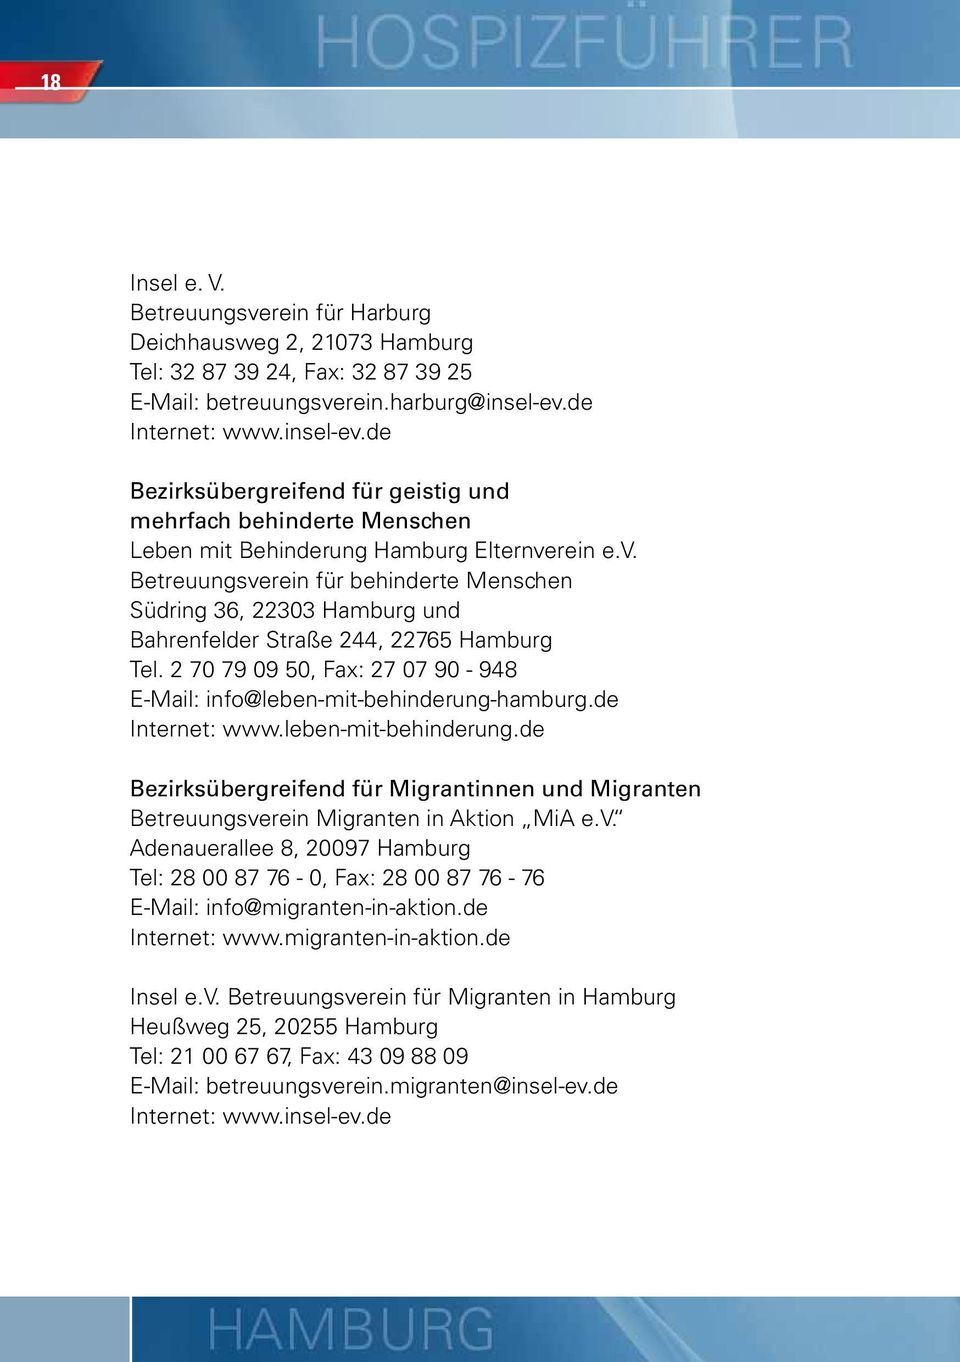 2 70 79 09 50, Fax: 27 07 90-948 E-Mail: info@leben-mit-behinderung-hamburg.de Internet: www.leben-mit-behinderung.de Bezirksübergreifend für Migrantinnen und Migranten Betreuungsverein Migranten in Aktion MiA e.